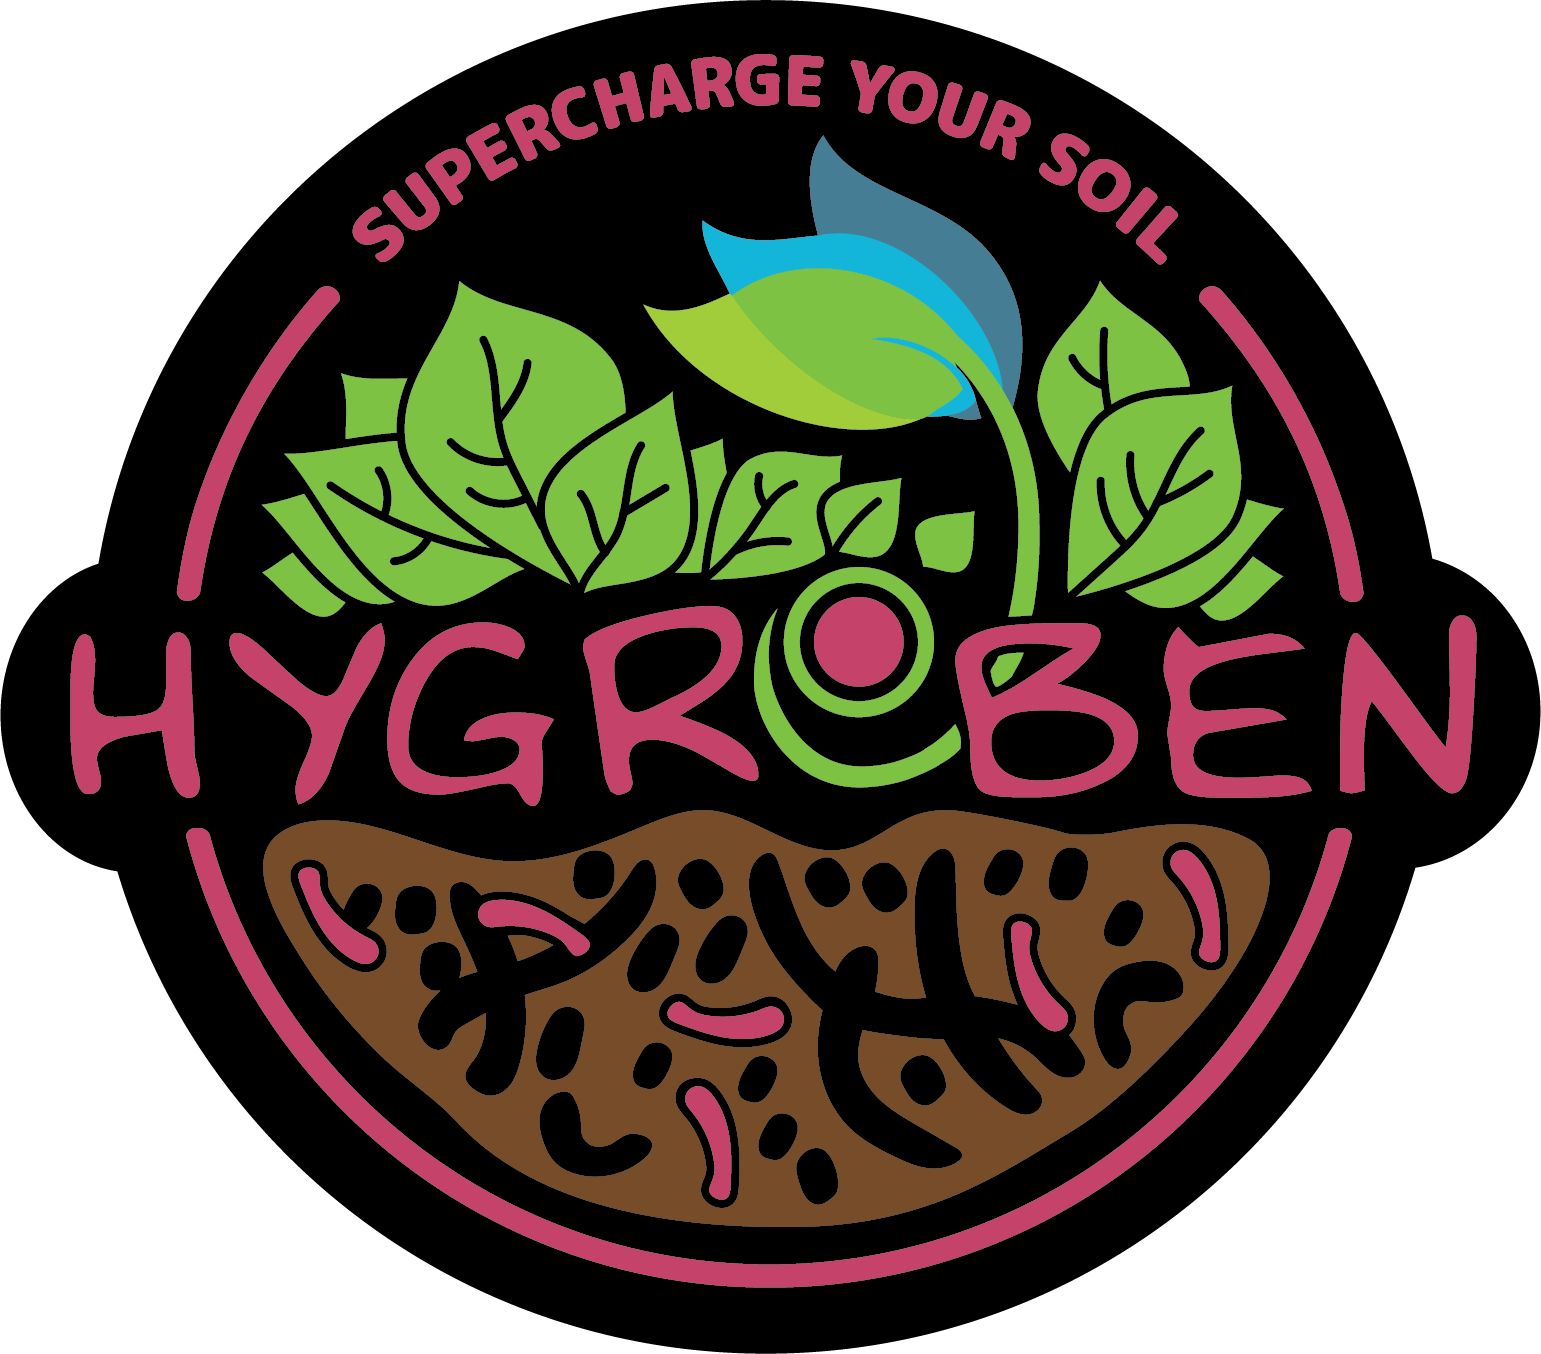 https://hygrozyme.com/wp-content/uploads/2022/11/HYGROBEN_logo_1.png